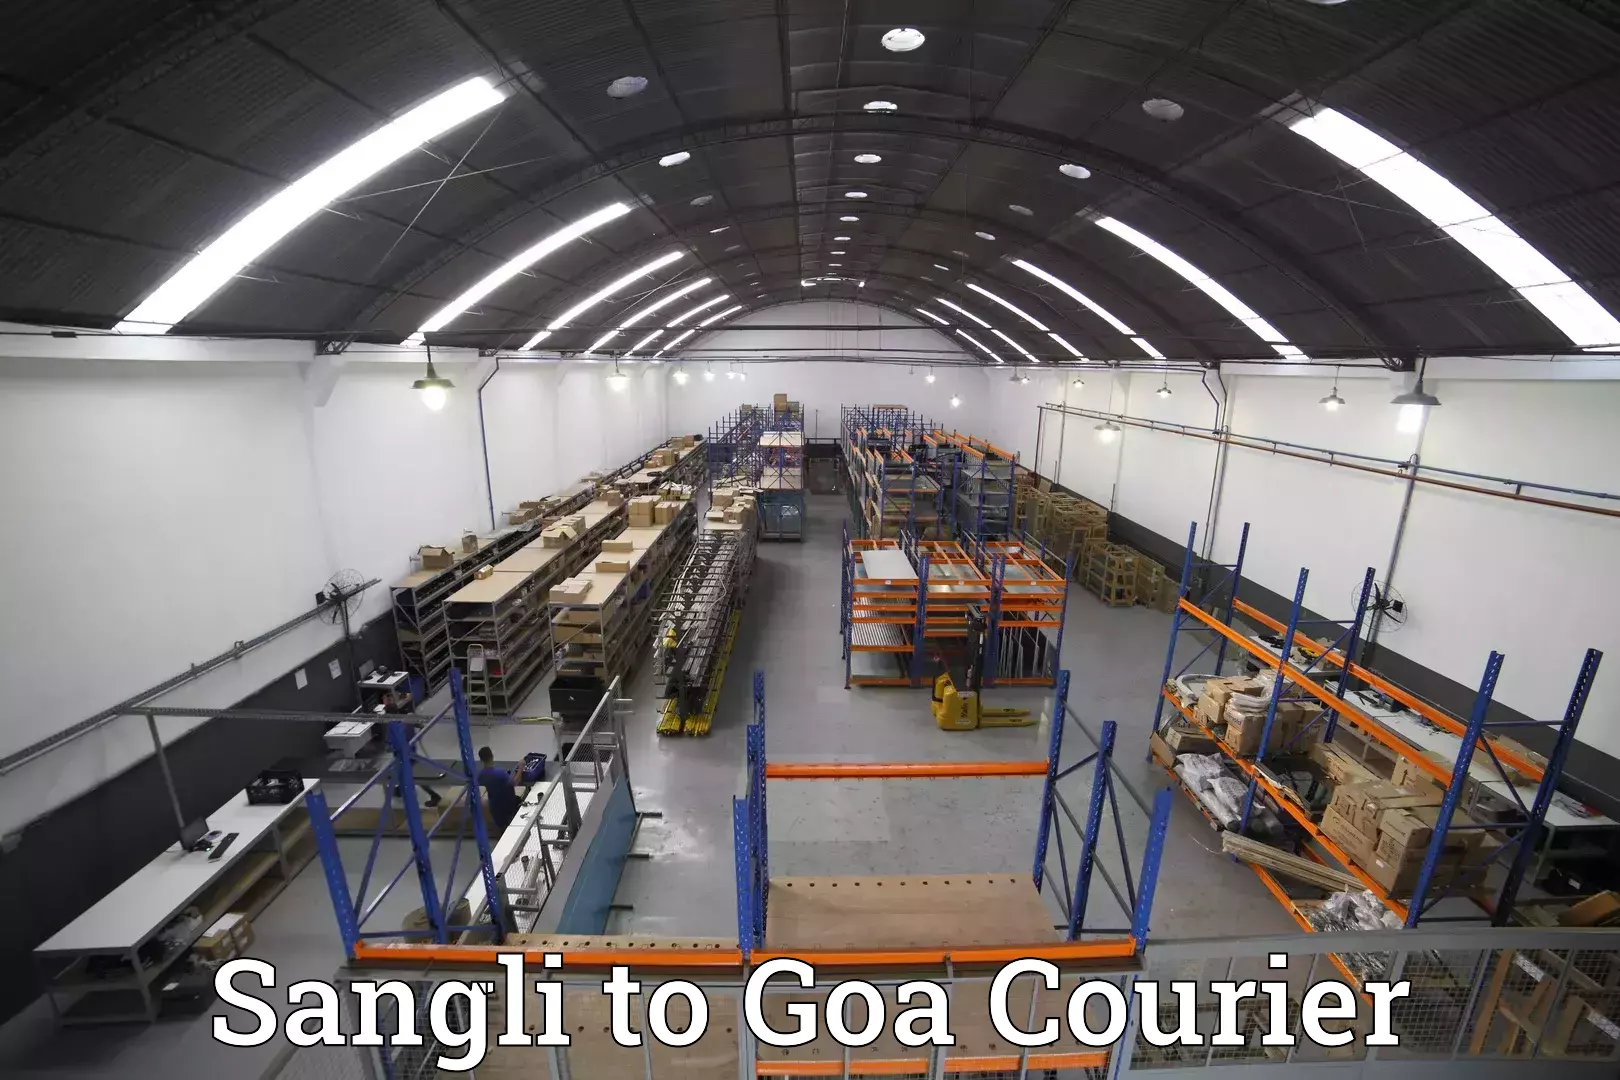 Luggage transit service Sangli to Goa University